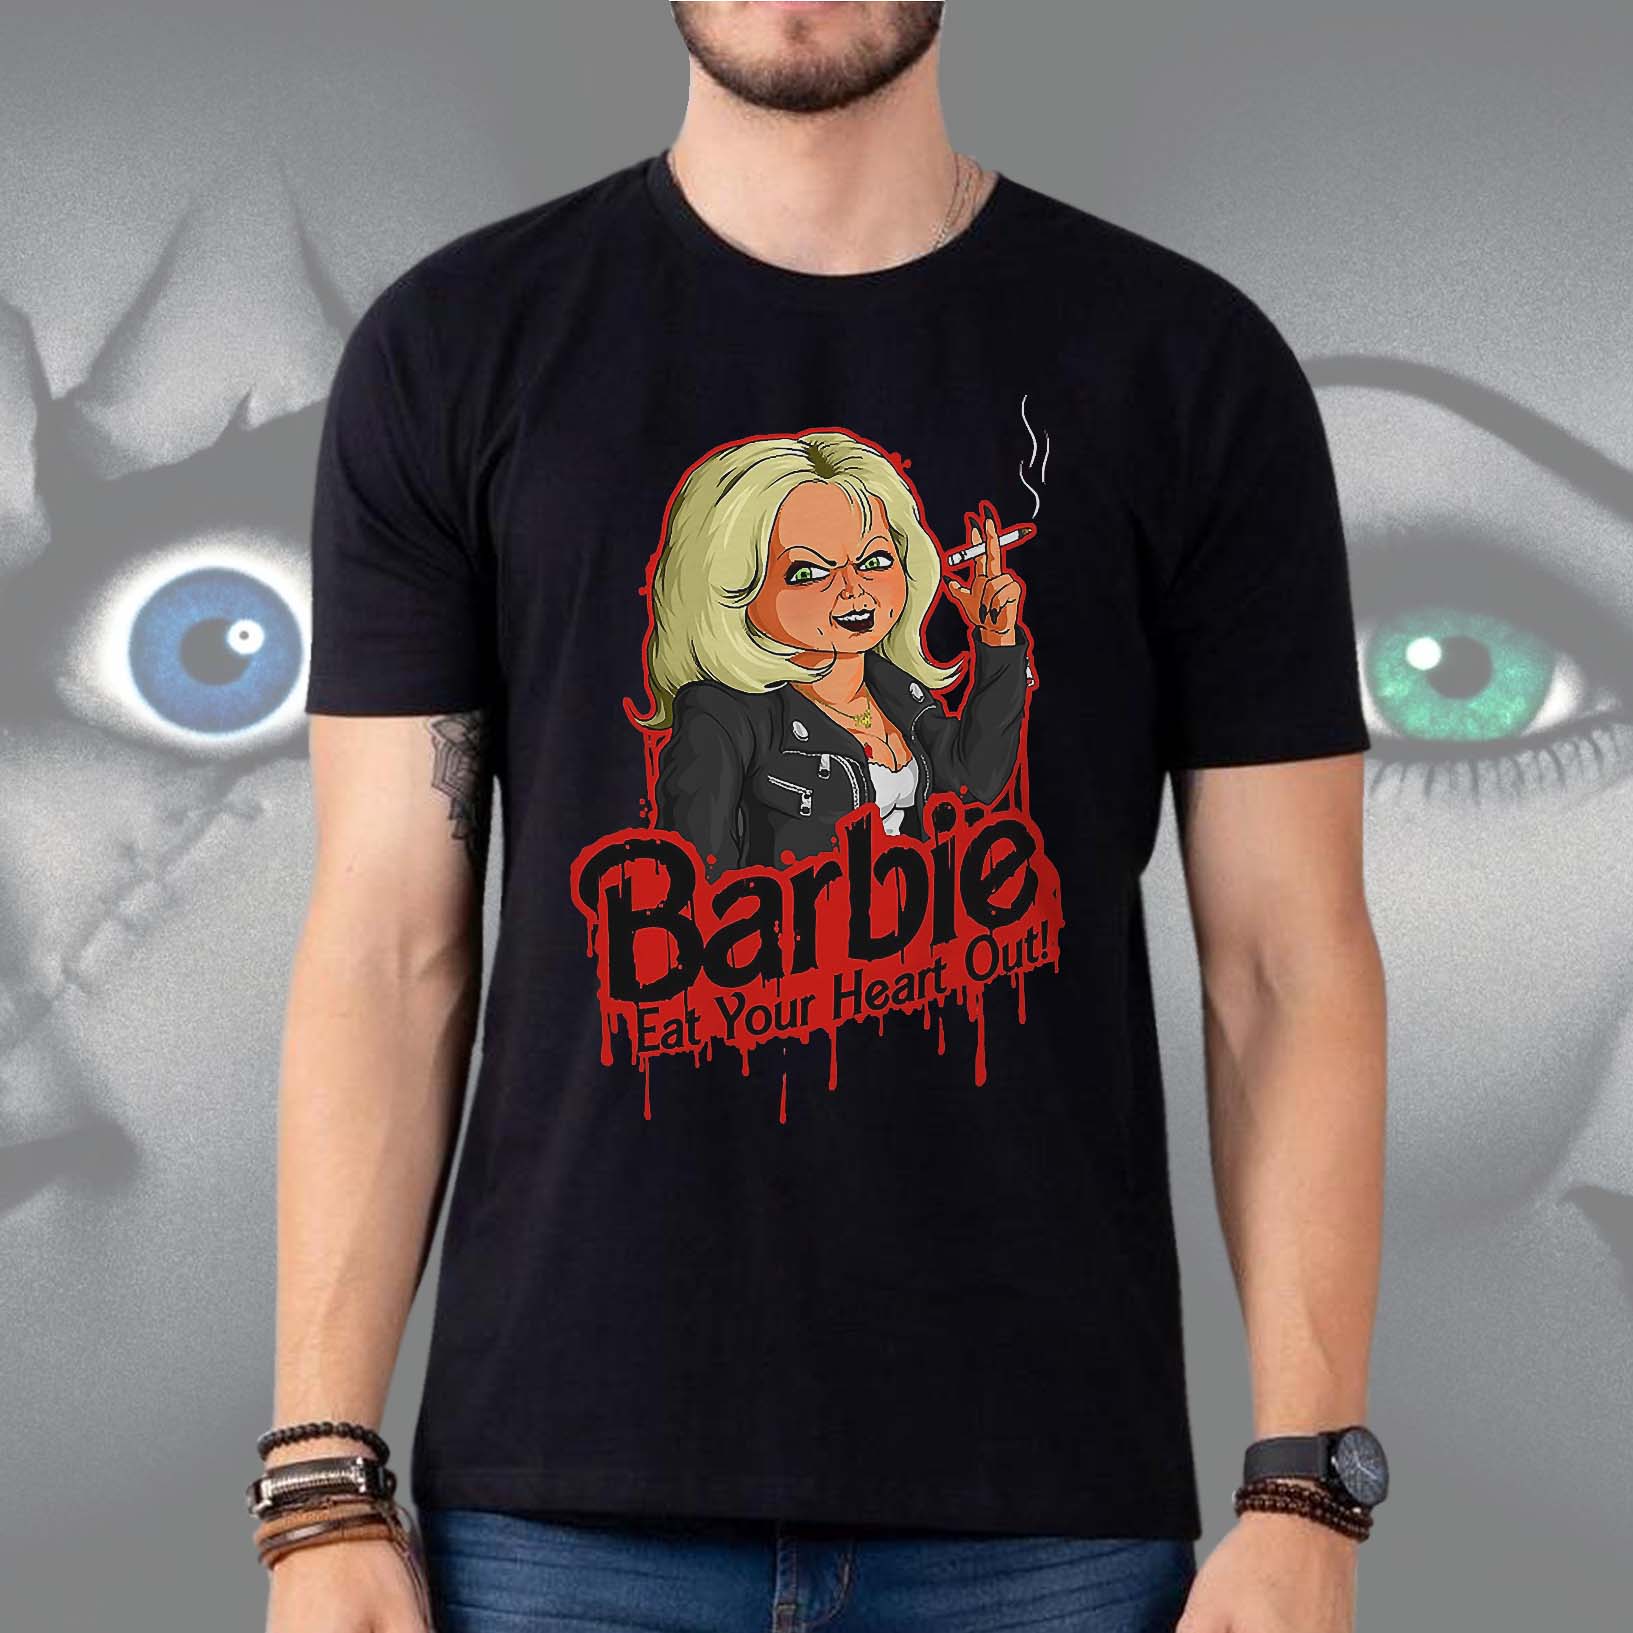 Camiseta Unissex Barbie Come Seu Coração Eat Your Heart Out Tiffany Chucky Brinquedo Assassino (Preta) - CD